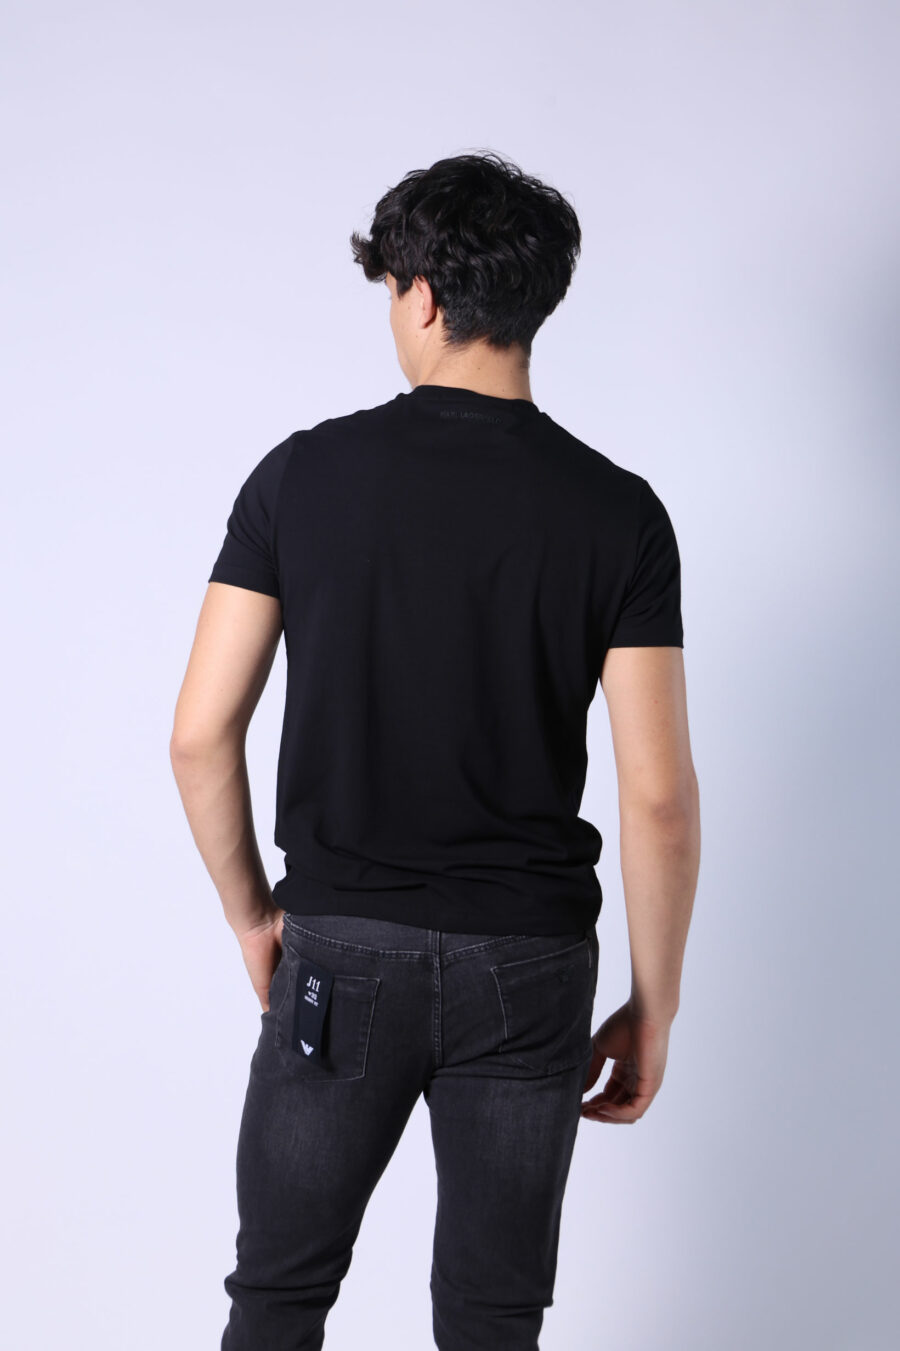 Camiseta negra con logo "ikonik" - Untitled Catalog 05722